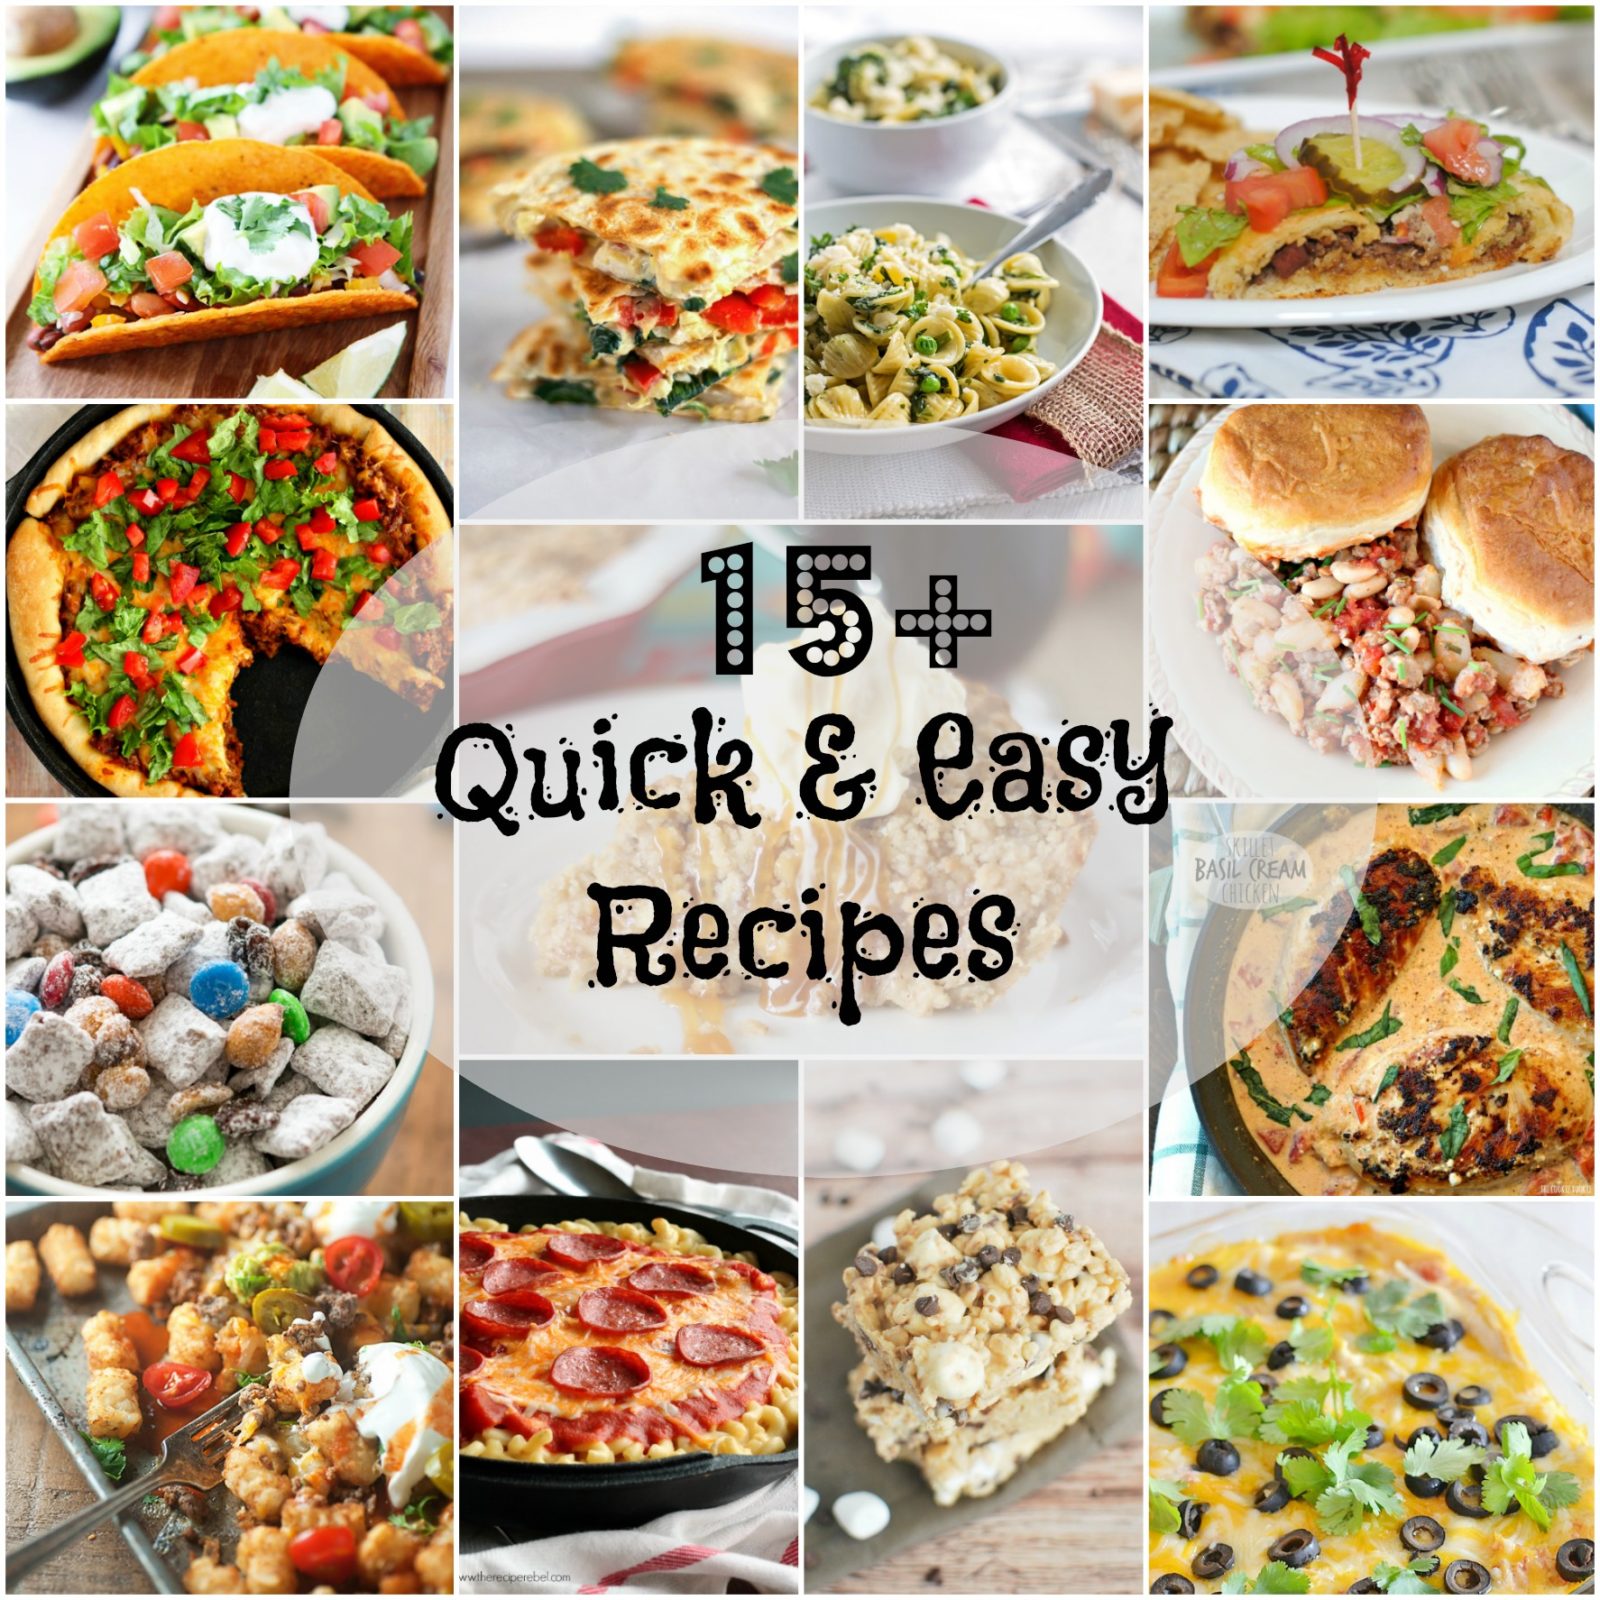 15+ Quick & Easy Recipes - My Kitchen Craze